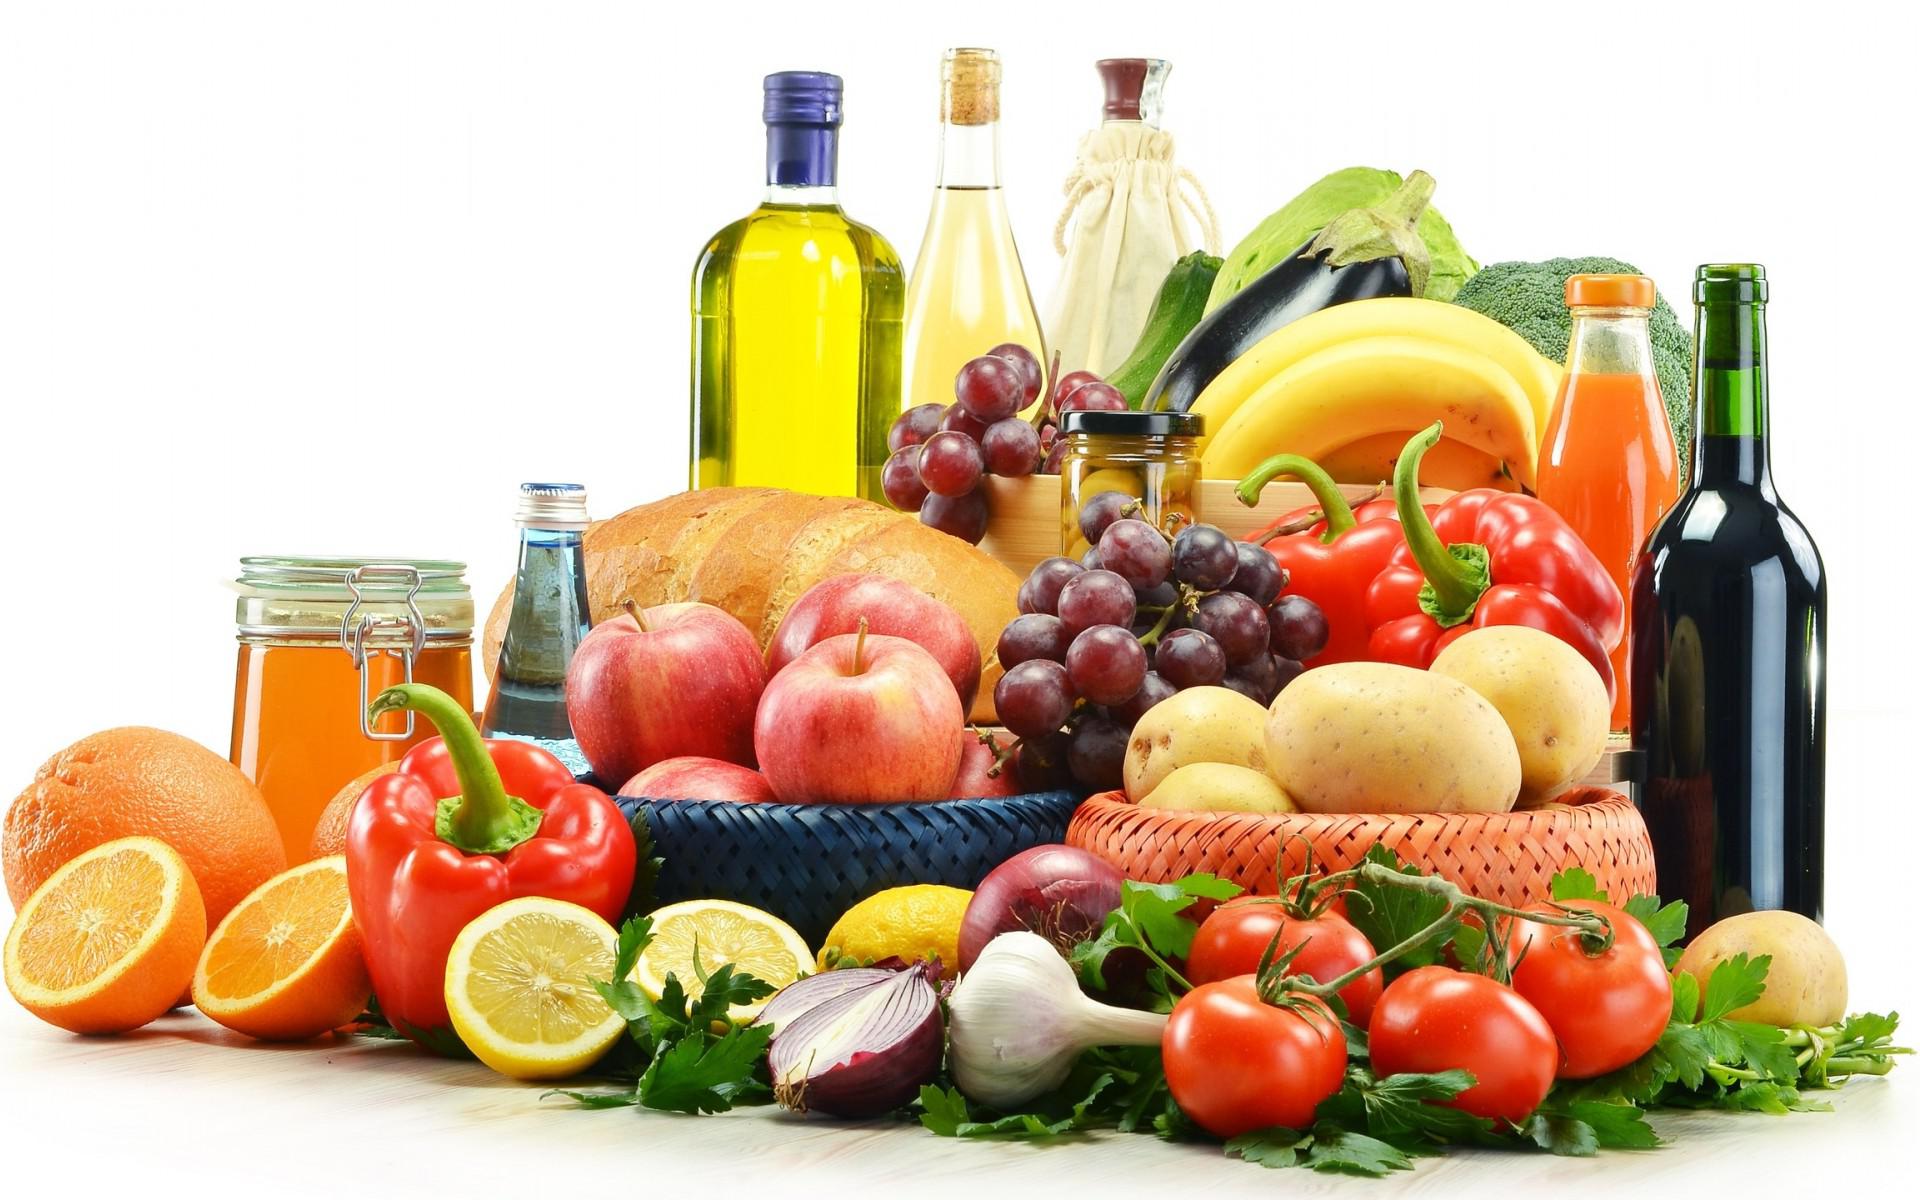 gesunde tapete,natürliche lebensmittel,produkt,essen,essen gruppe,lokales essen